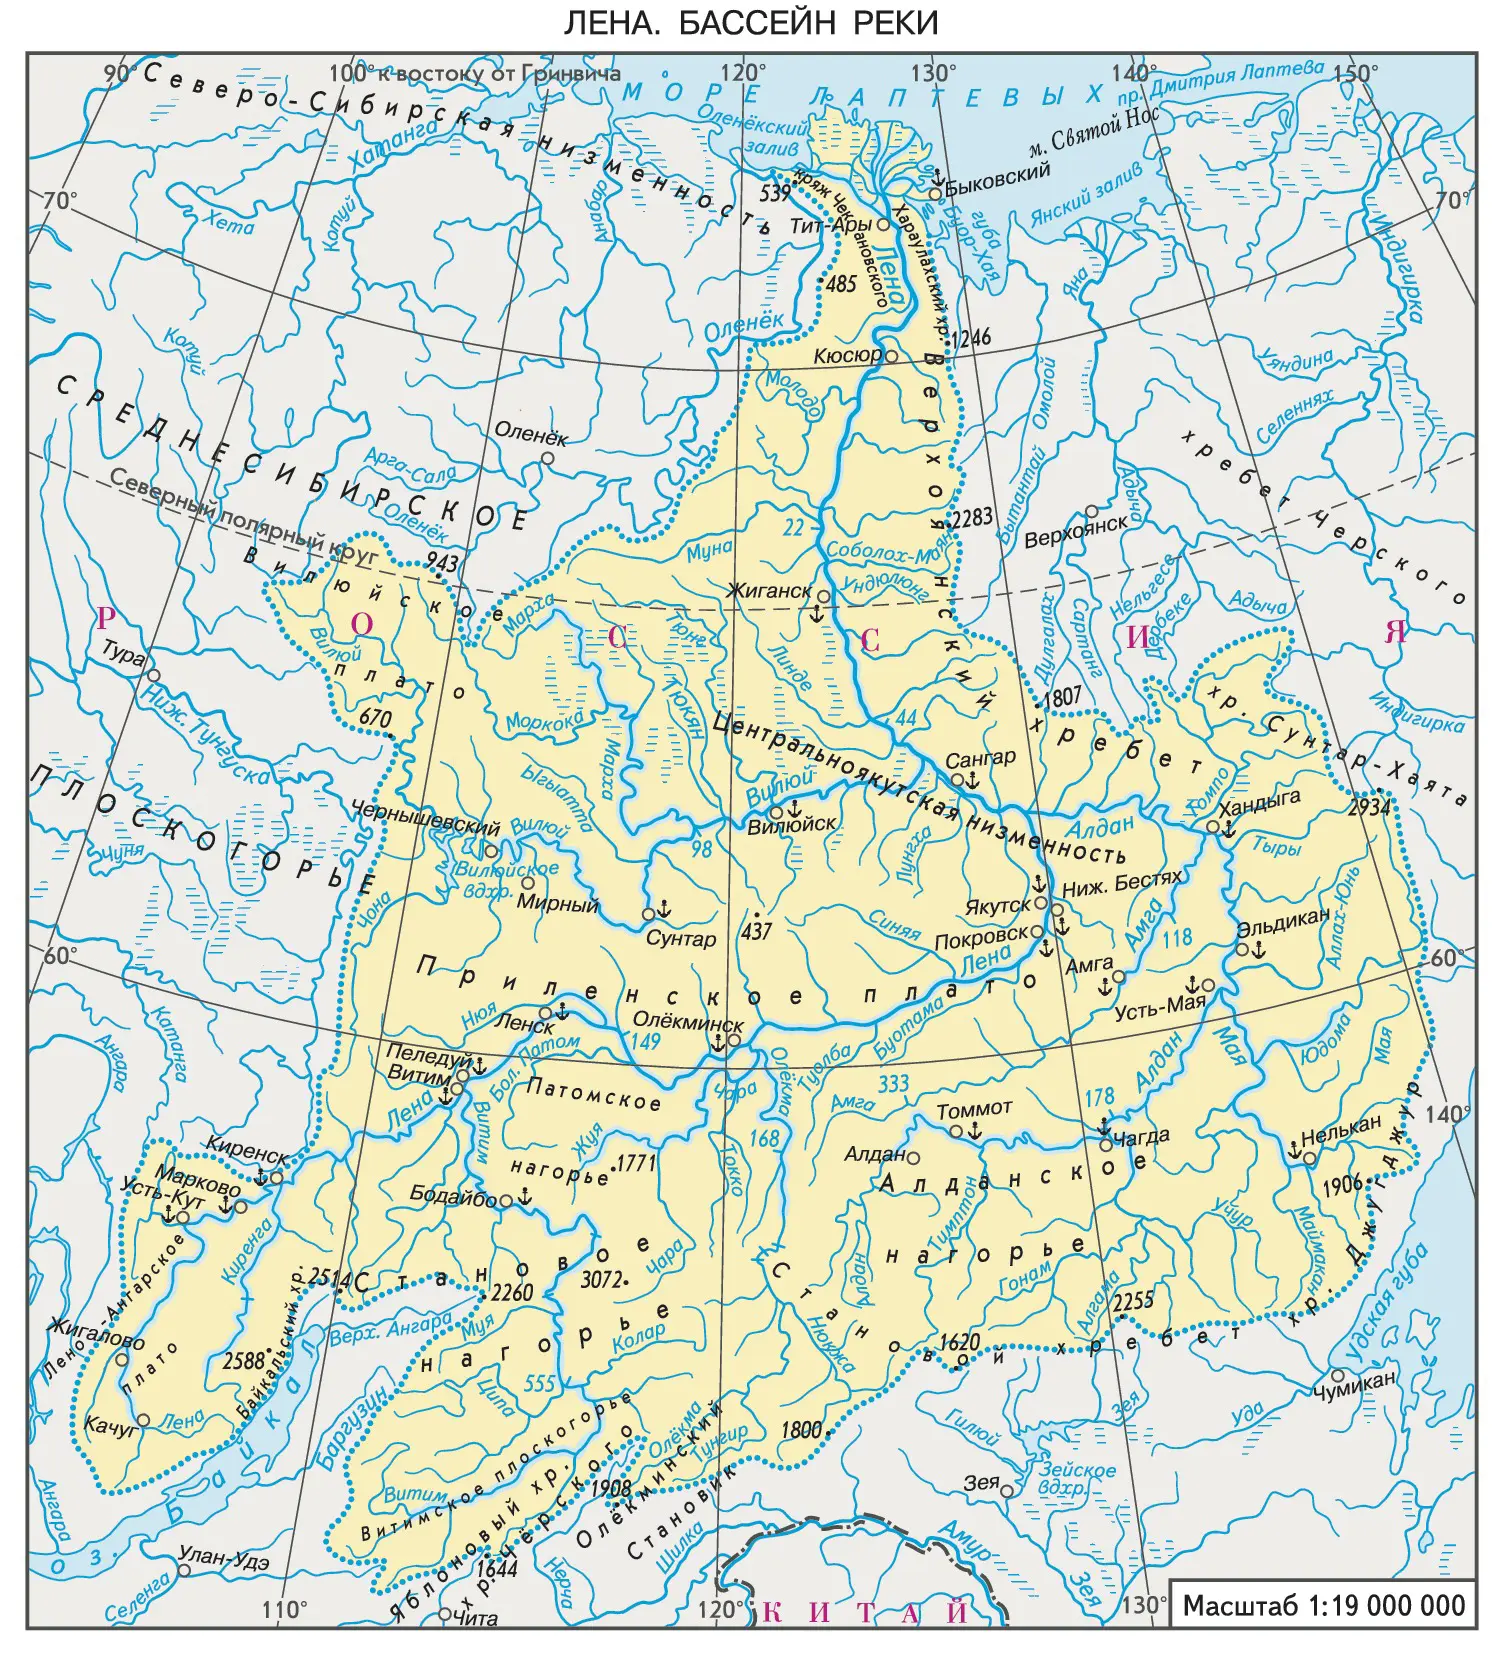 Какое направление реки лена. Бассейн реки Лена на карте России. Бассейн реки Лены на карте. Бассейн реки Лена. Исток реки Лена на карте России.